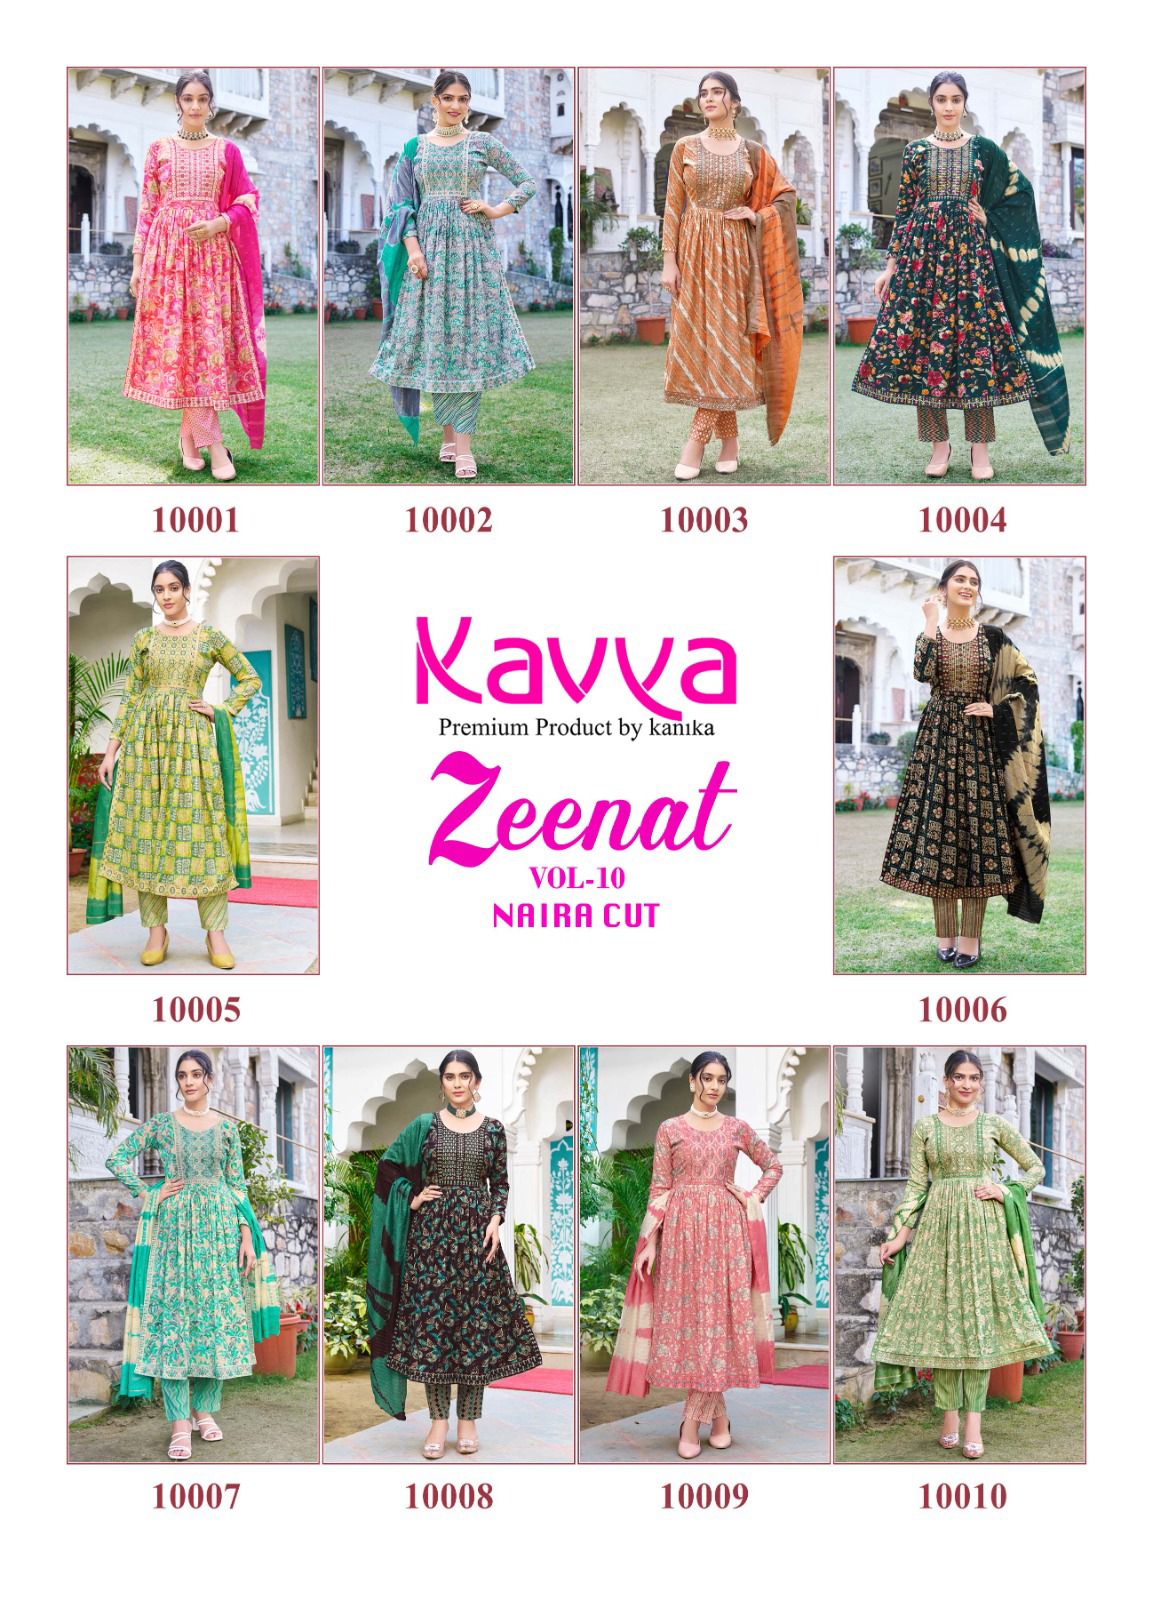 Kavya Zeenat Vol 10 collection 6